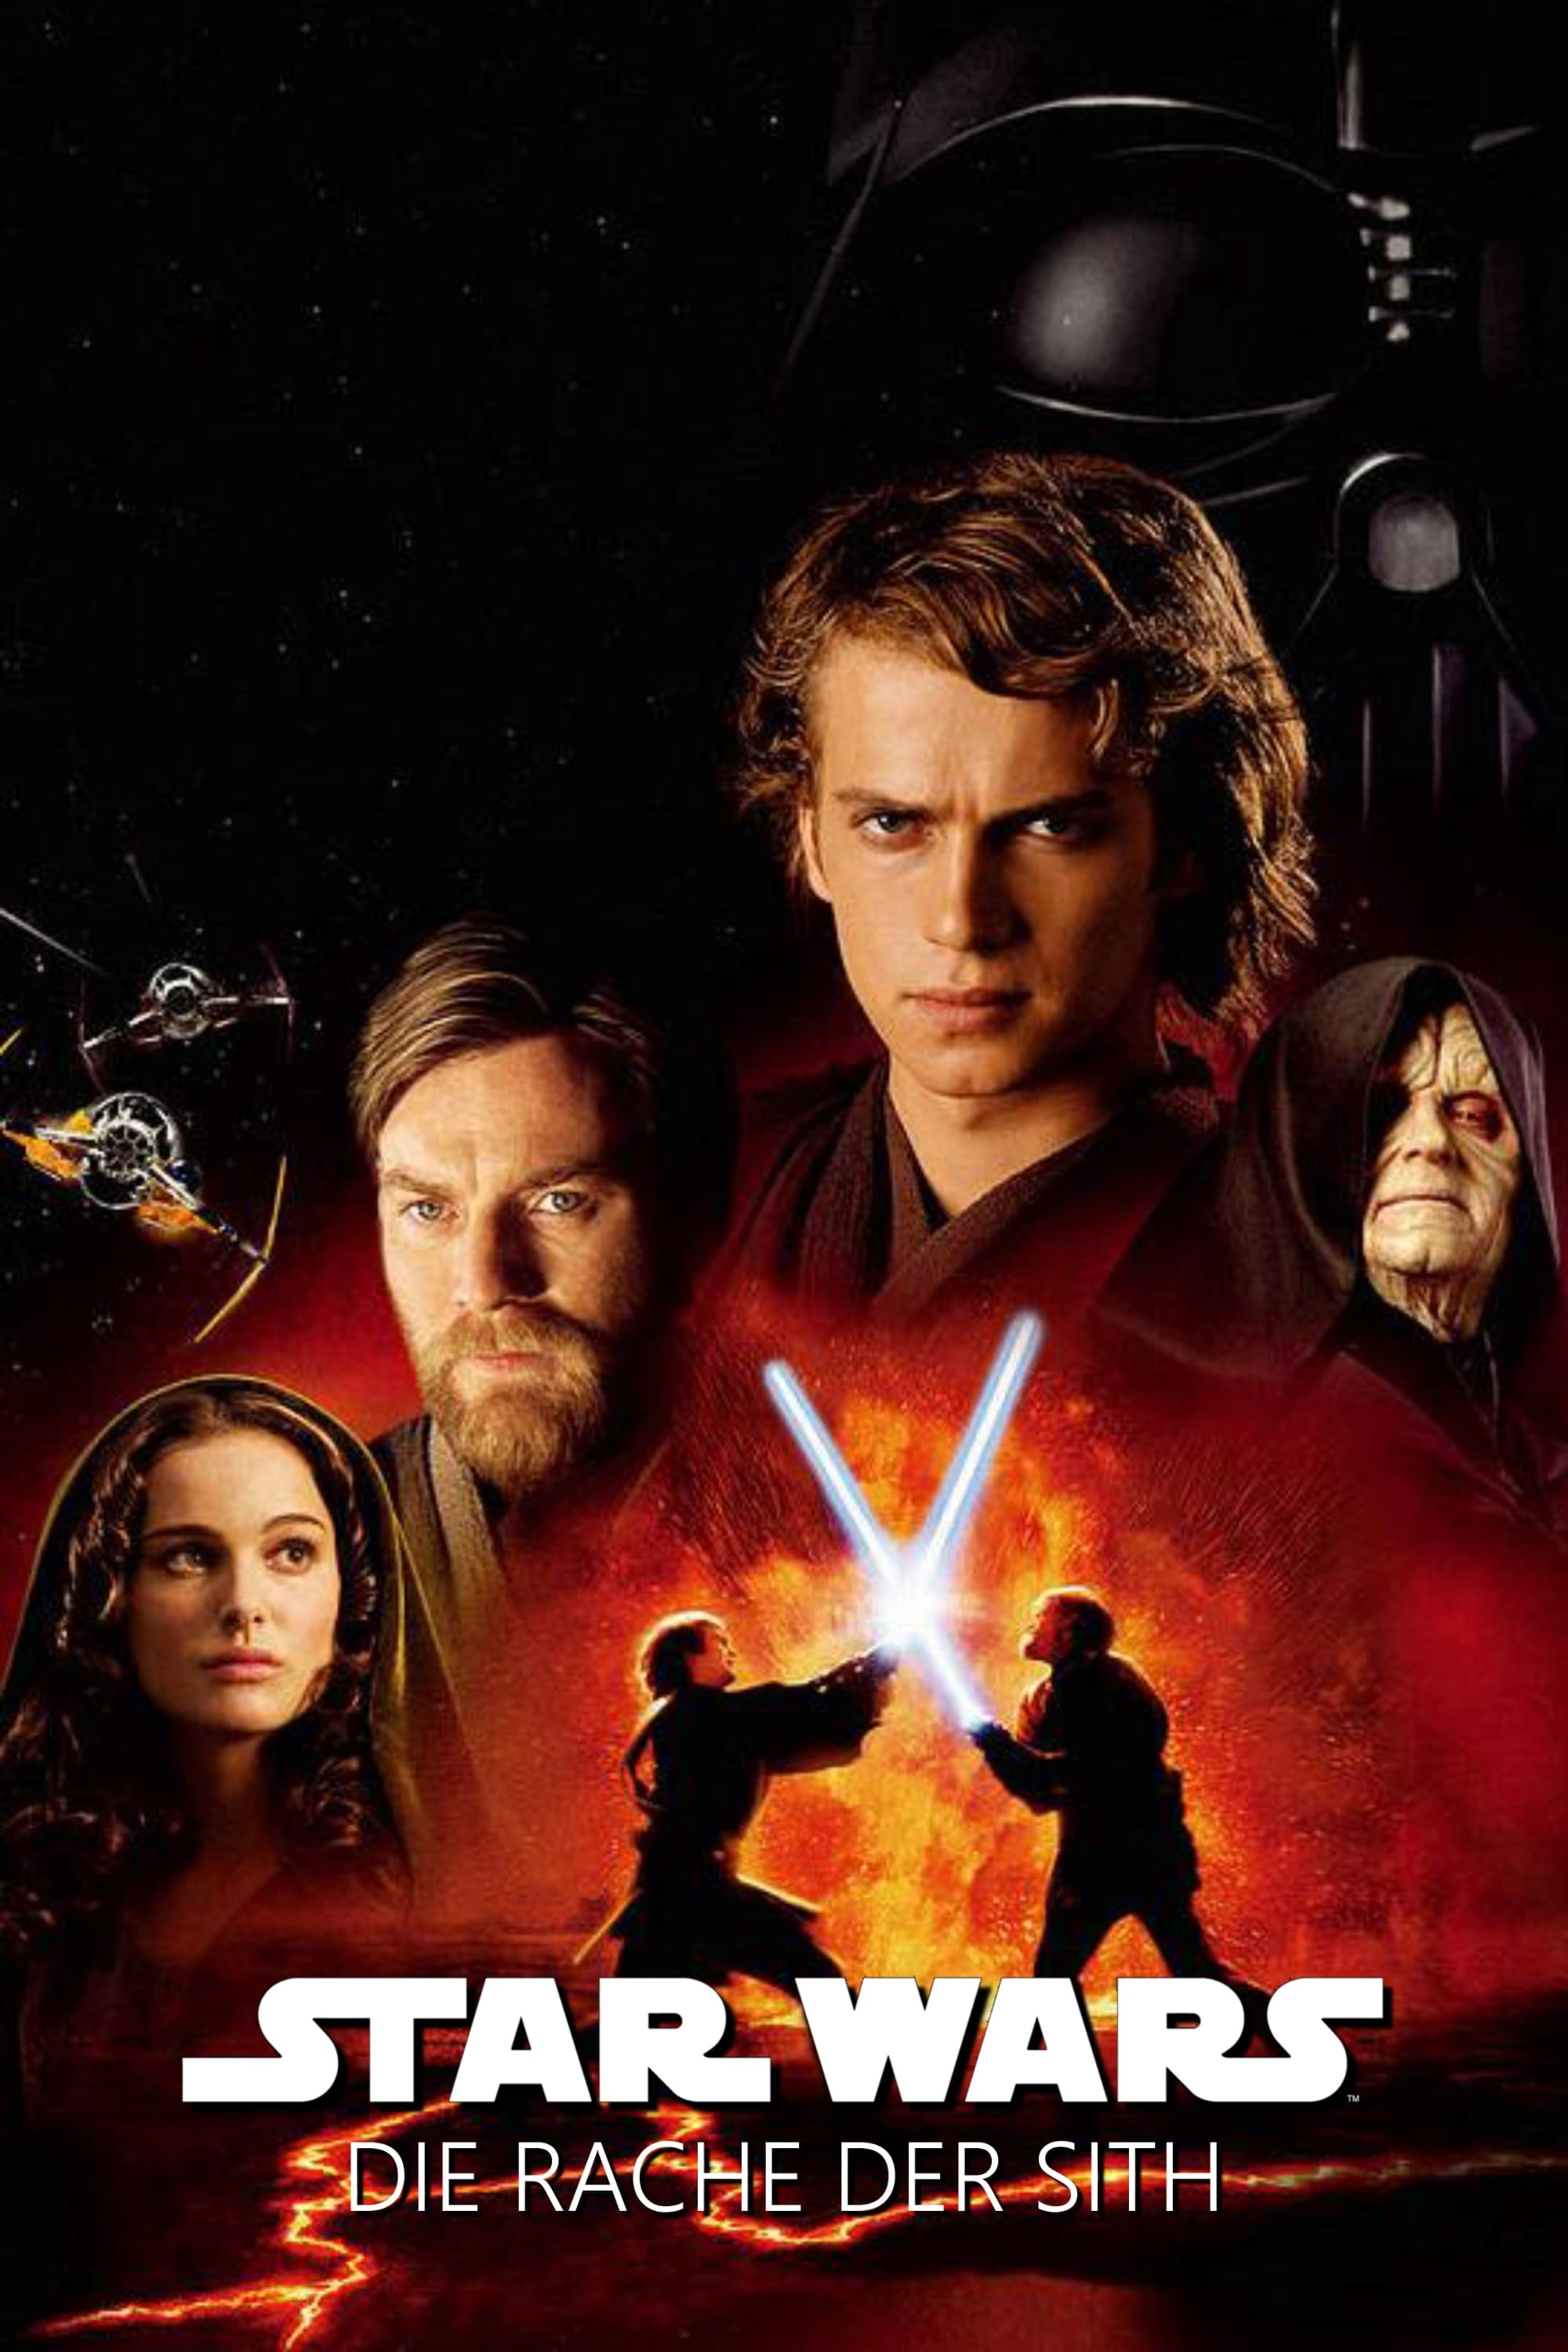 Star Wars: Episode III - Die Rache der Sith als legalen online Stream